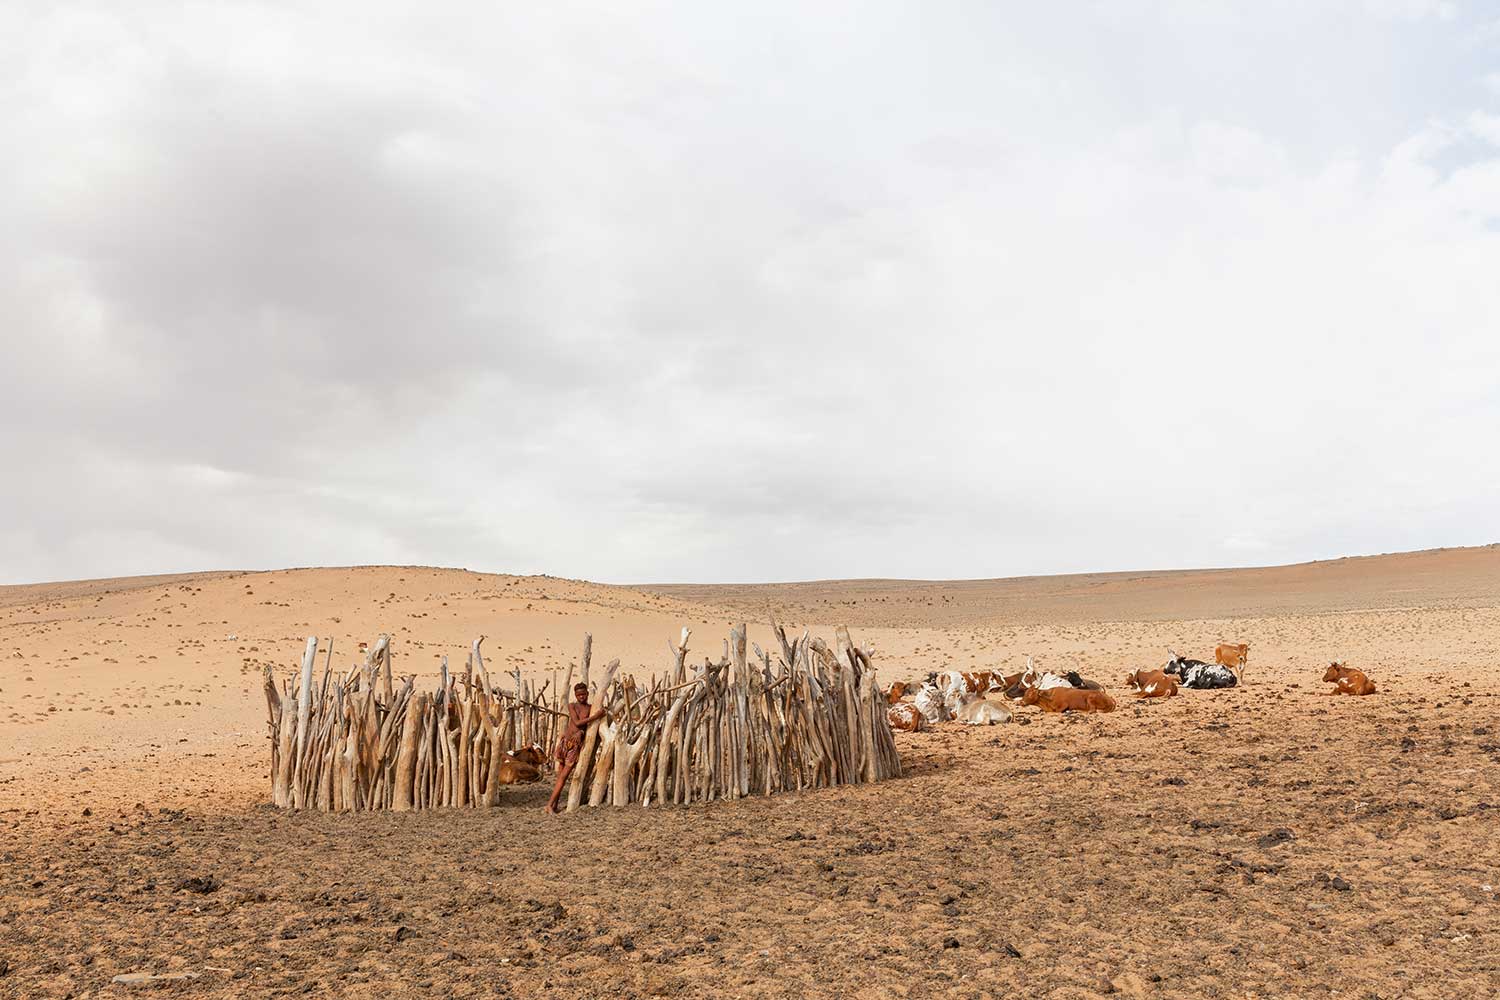 Himba cattle enclosure. Namibia